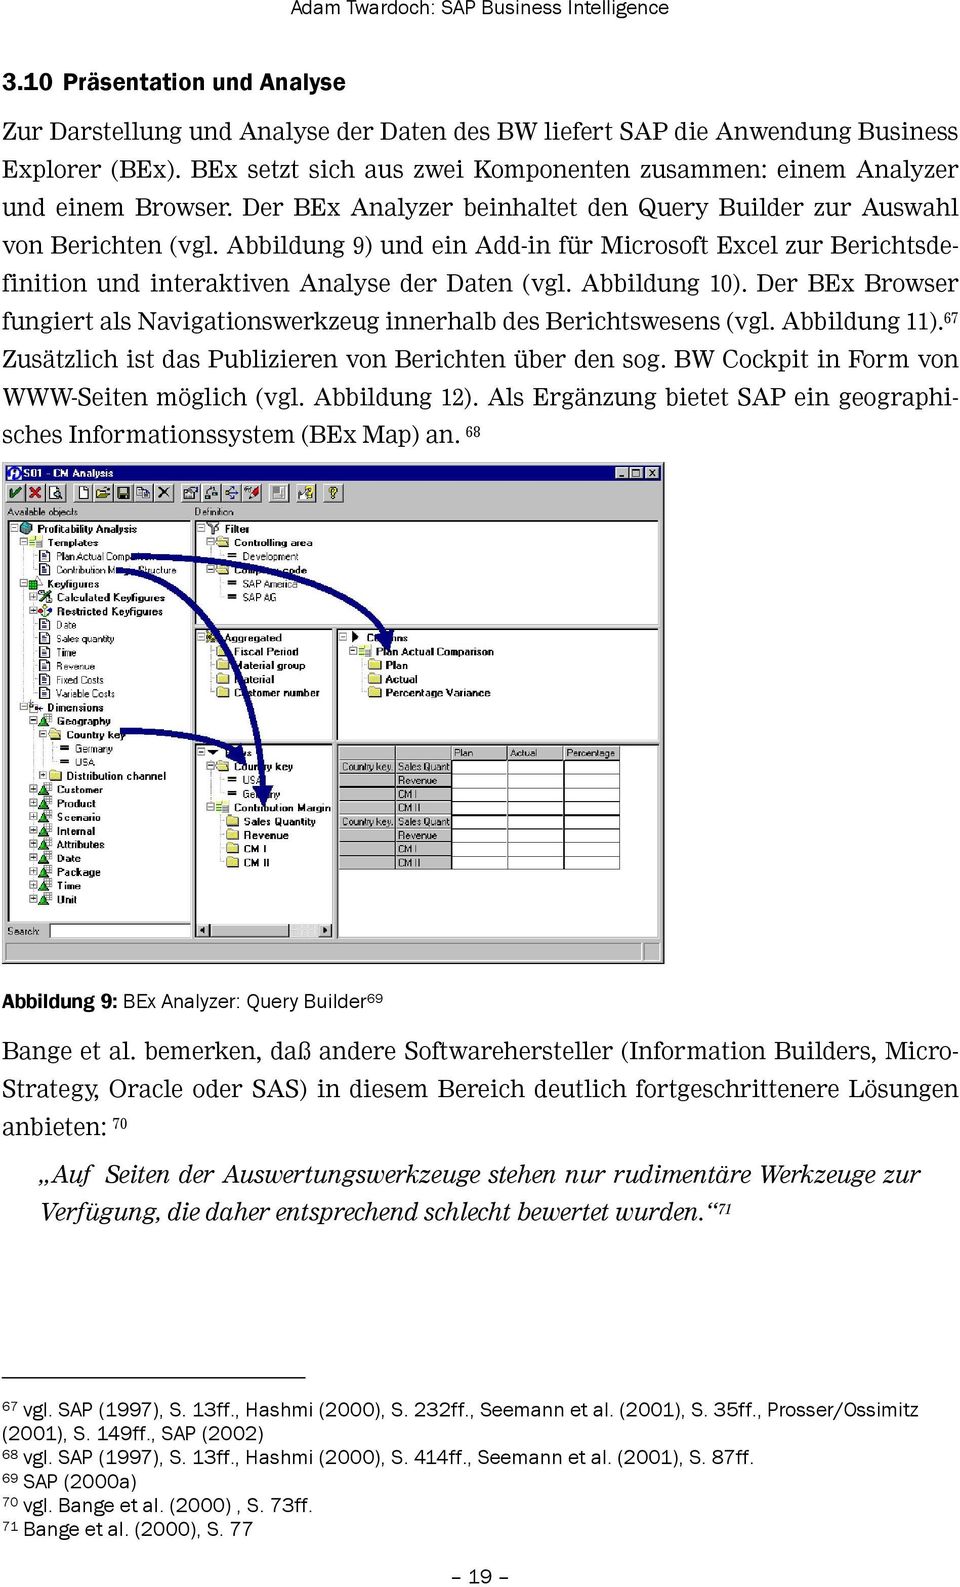 Abbildung 9) und ein Add-in für Microsoft Excel zur Berichtsdefinition und interaktiven Analyse der Daten (vgl. Abbildung 10).